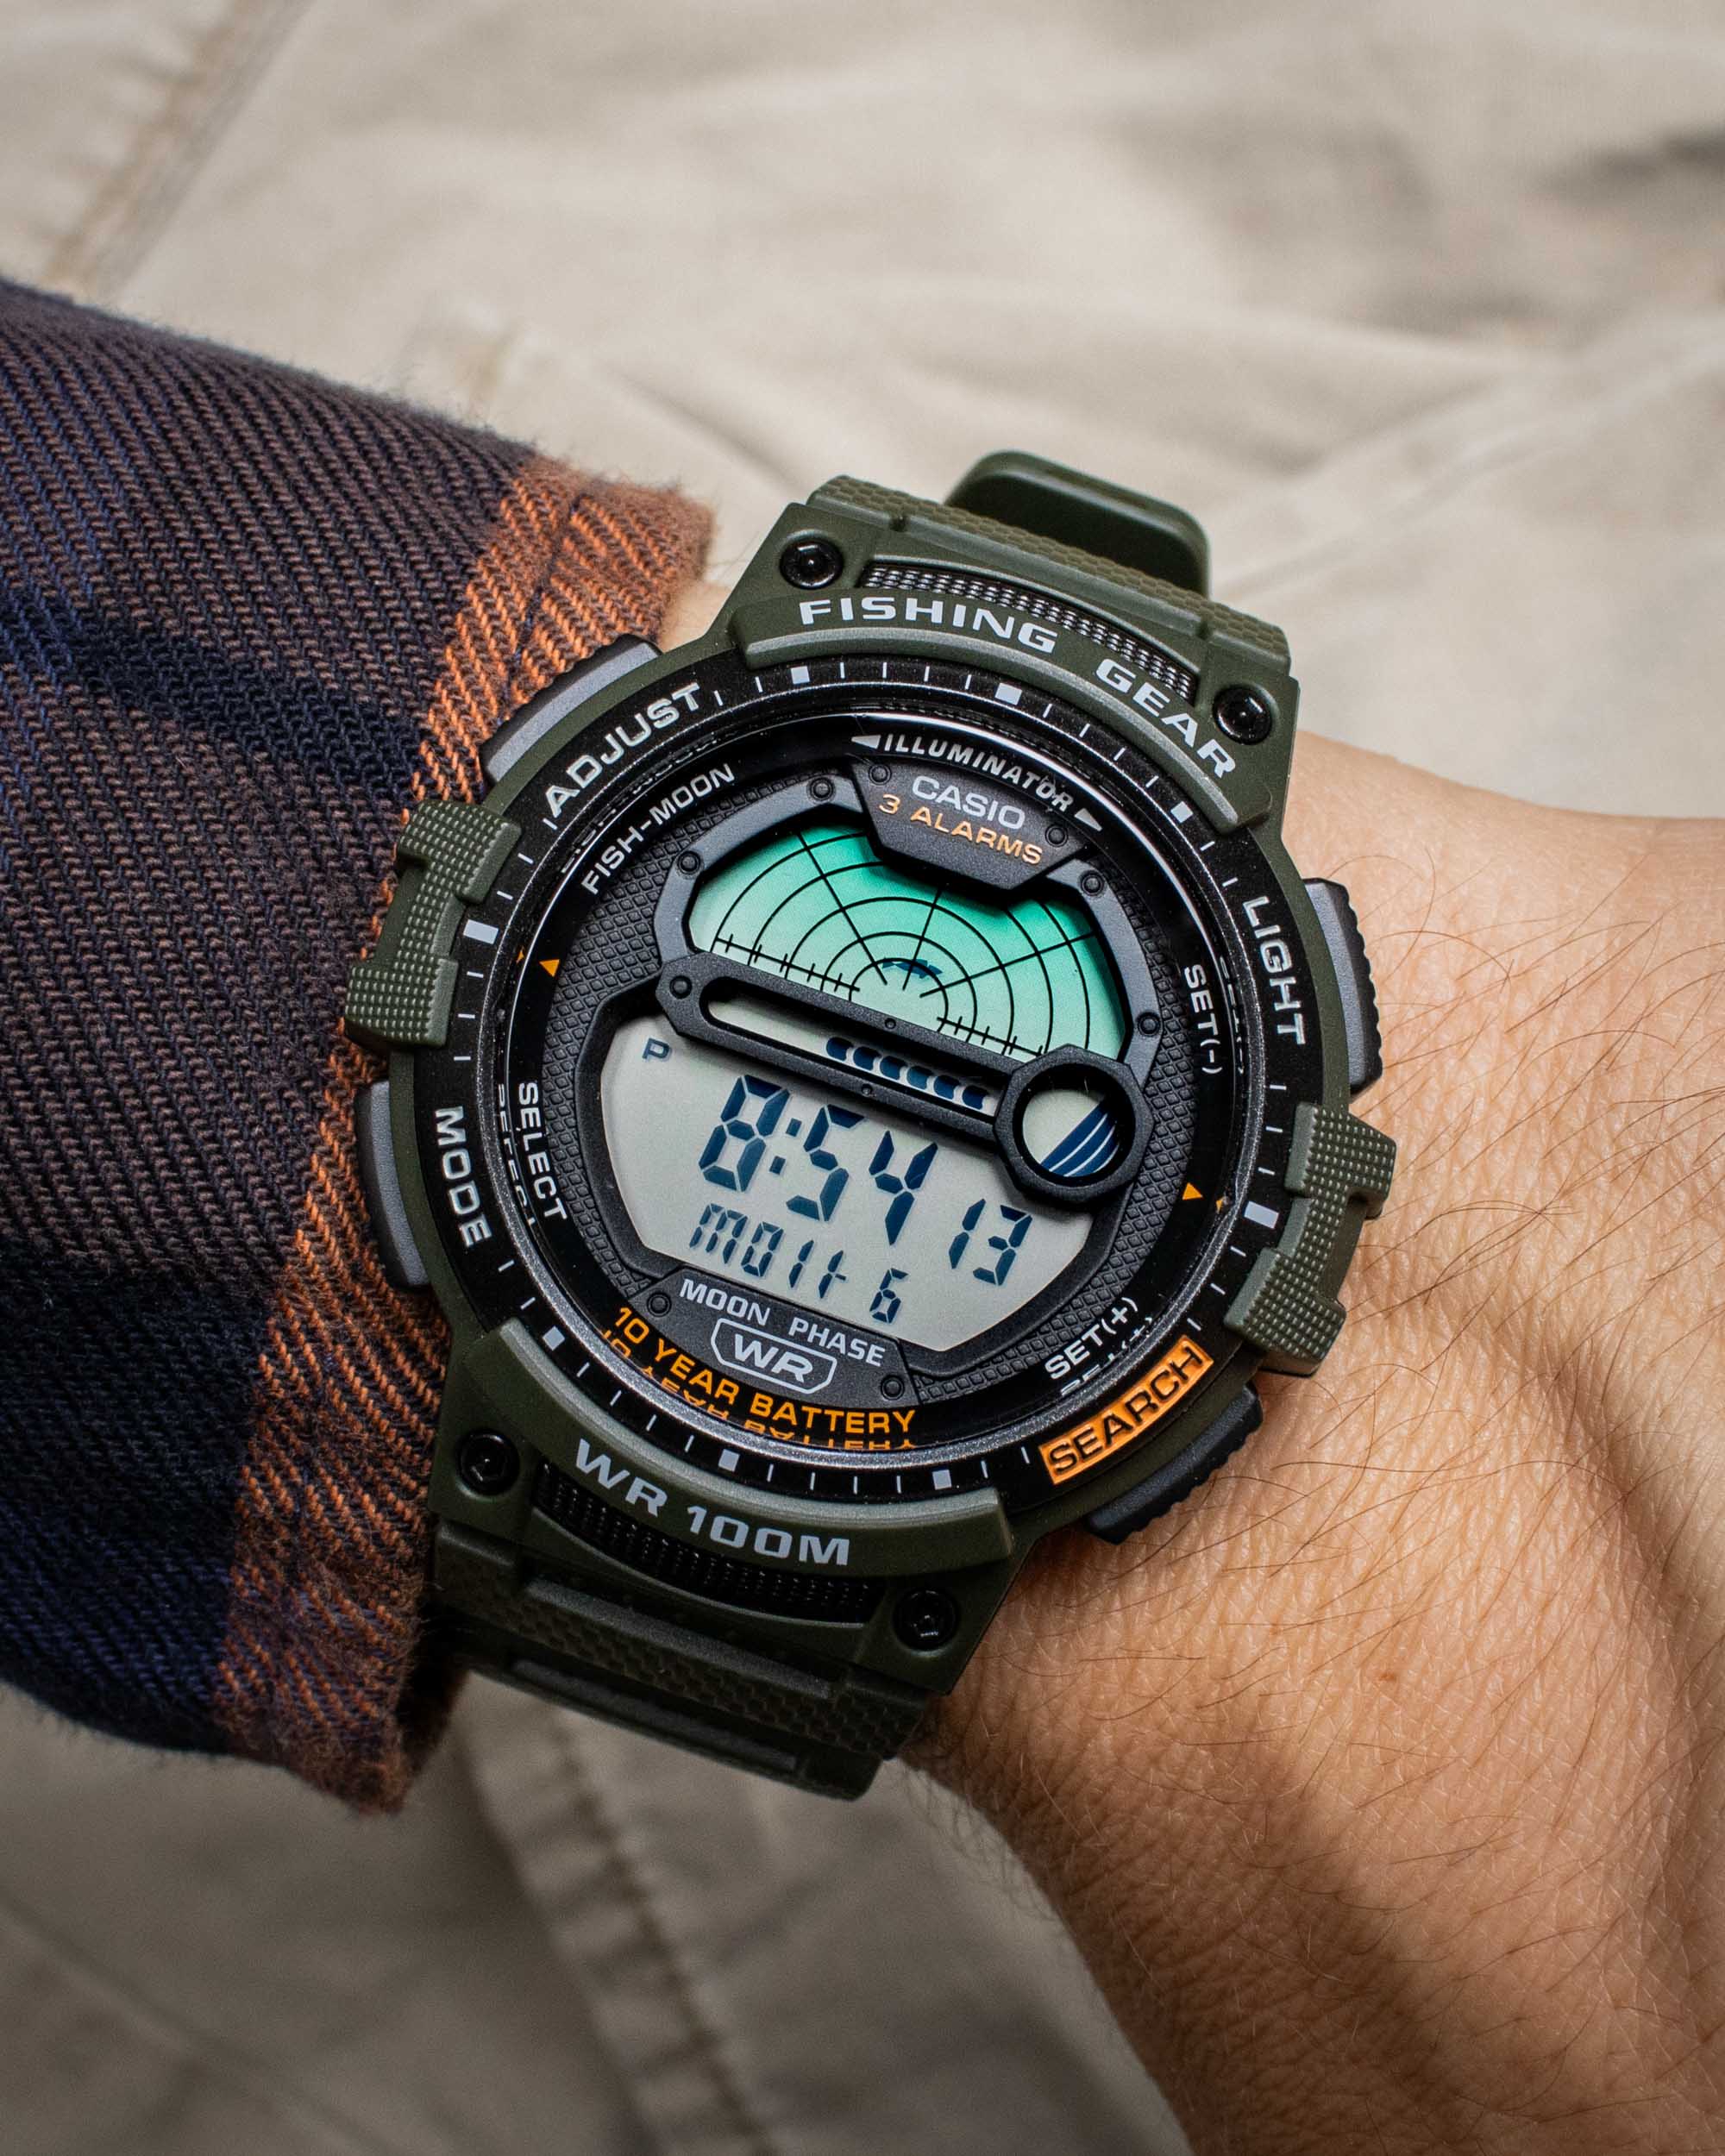 Актуальная цена 30$: Часы Casio Fishing Gear WS1200H